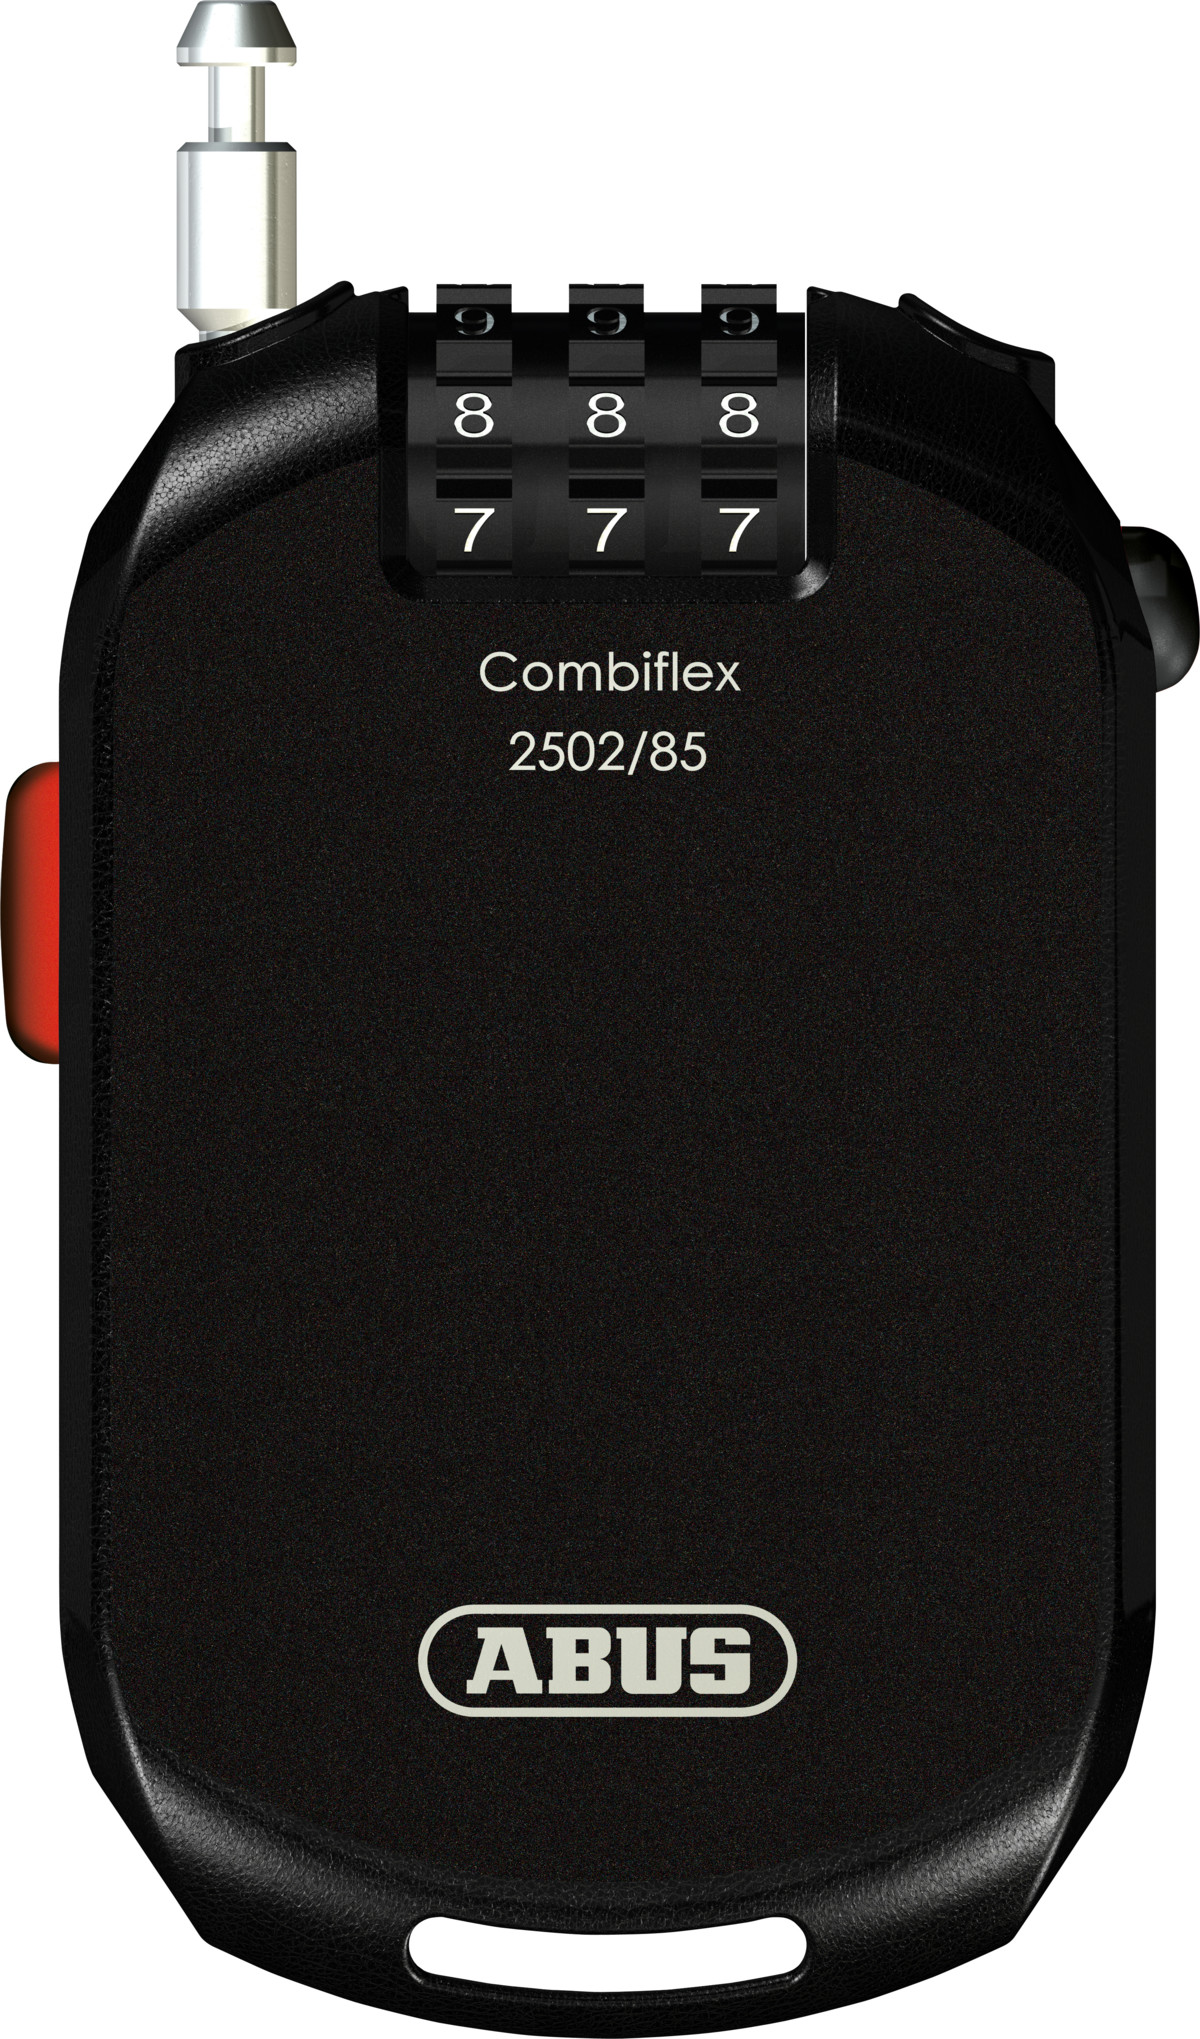 Combiflex 2502/85